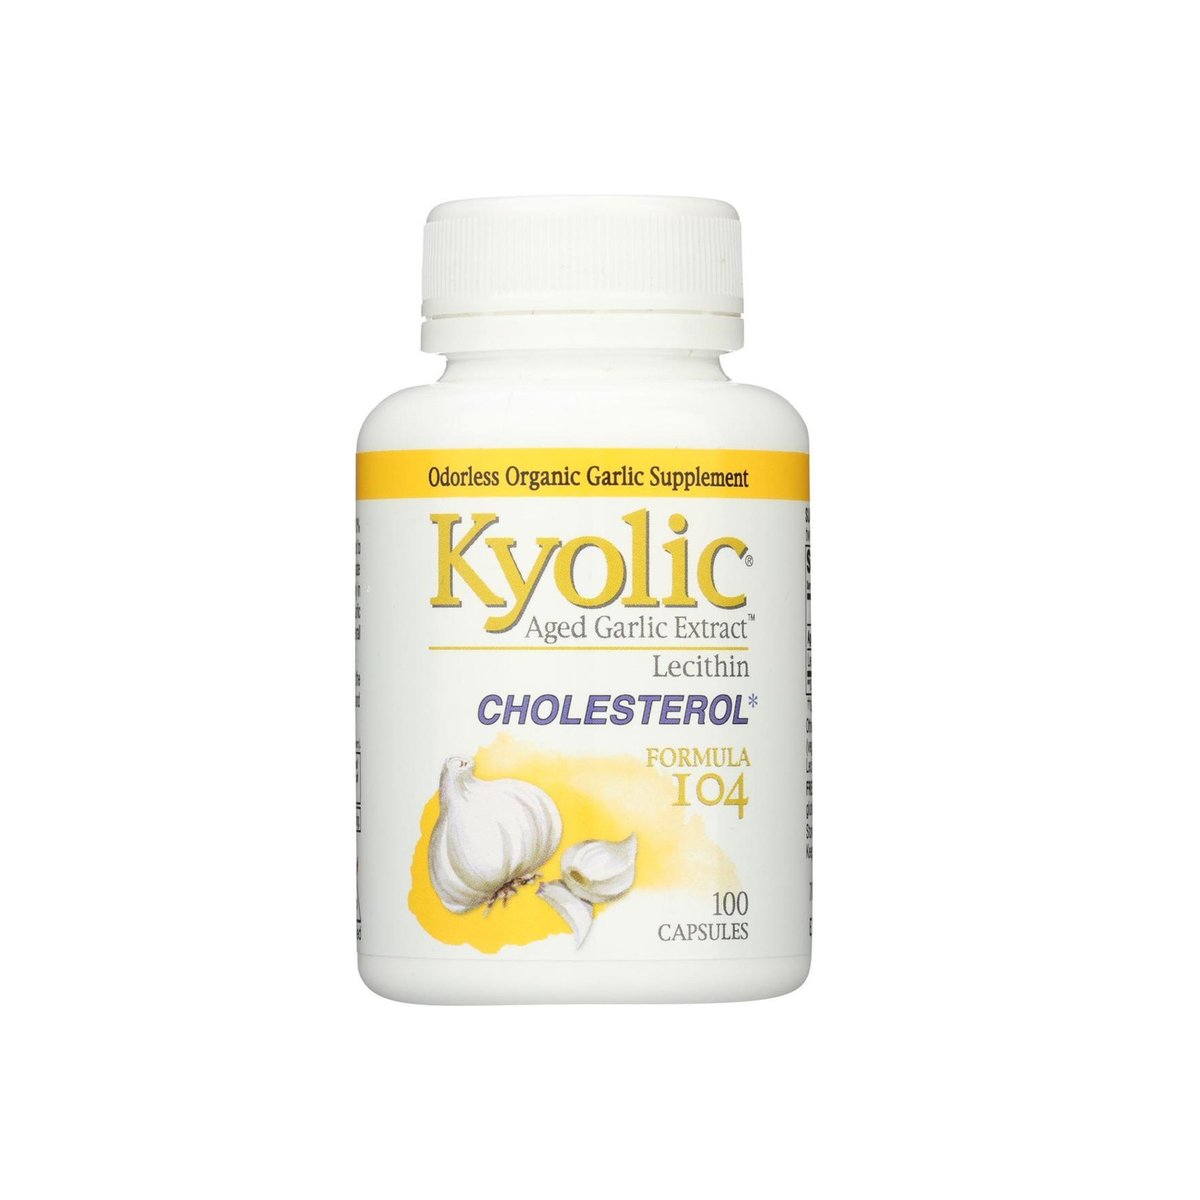 اشتري قم بشراء Kyolic Aged Garlic Extract Cholesterol Formula 104 100 Capsules Online at Best Price من الموقع - من لولو هايبر ماركت Vitamins&Supplements في الامارات